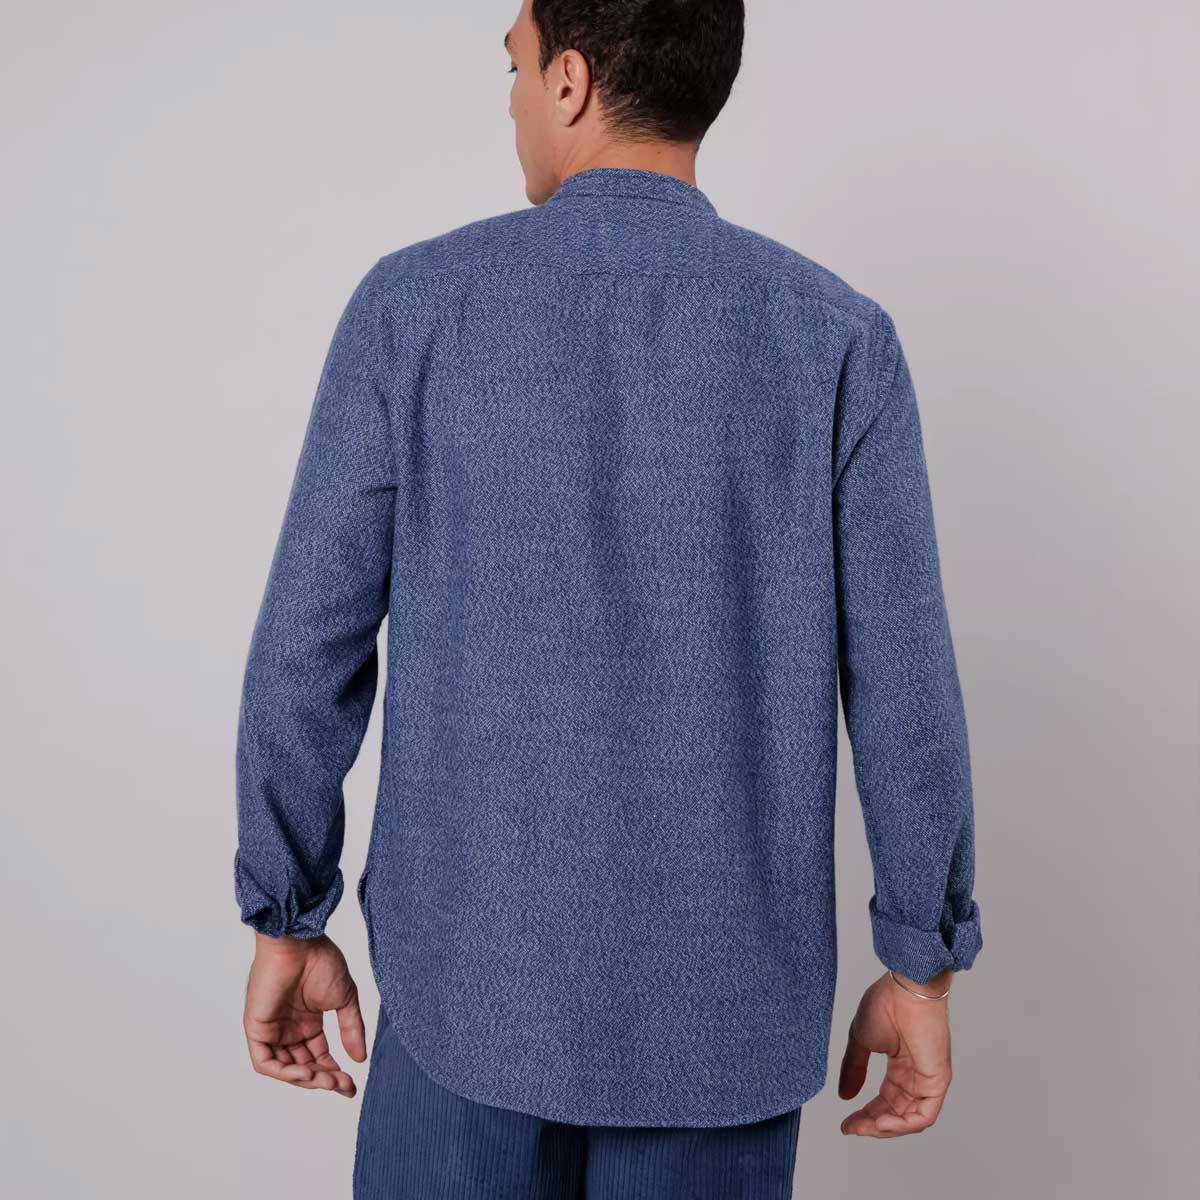 Flauschiges blaues Flanellhemd mit Maokragen und Knopfleiste aus Biobaumwolle.